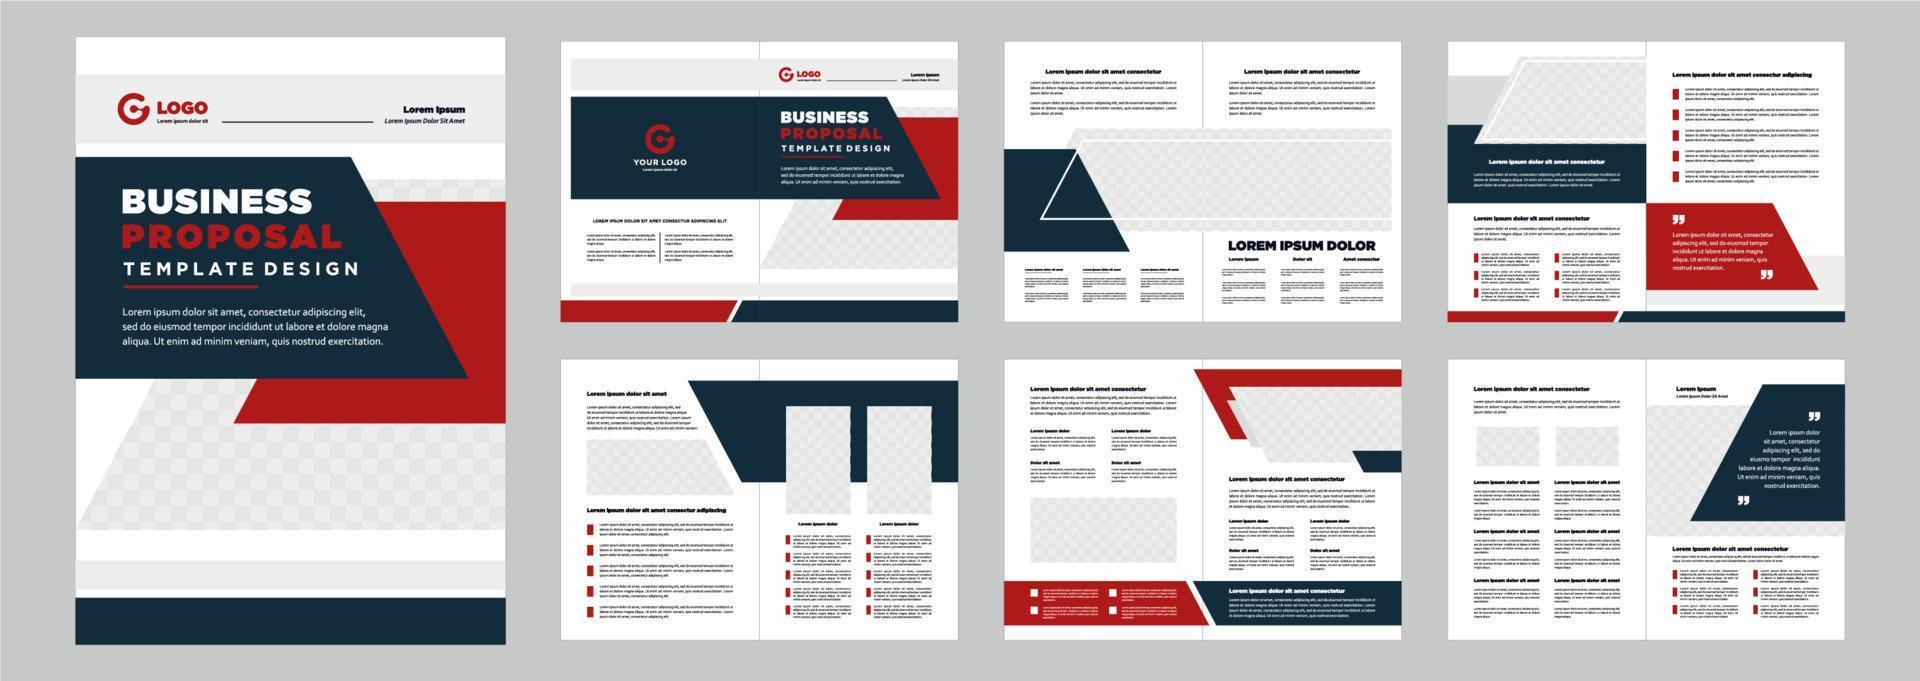 Firmenprofil-Vorschlag oder Broschüren-Vorlagen-Layout-Design Form minimalistischer Geschäftsvorschlag oder Broschüren-Vorlagen-Design vektor